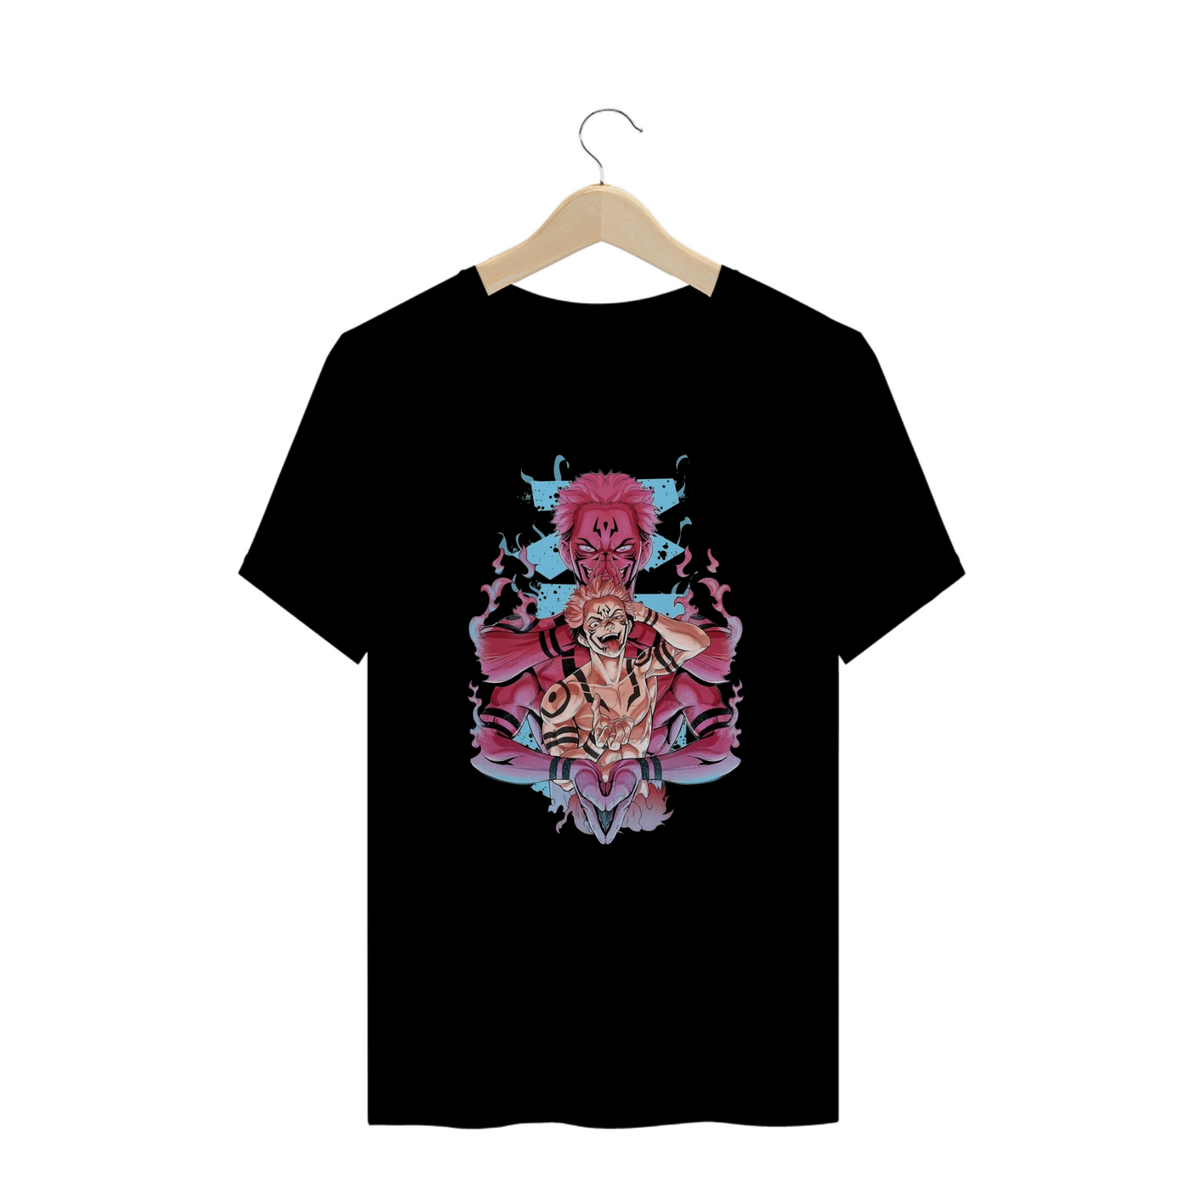 Nome do produto: Camisa T-shirt Plus Size - Sukuna (Jujutsu kaisen)